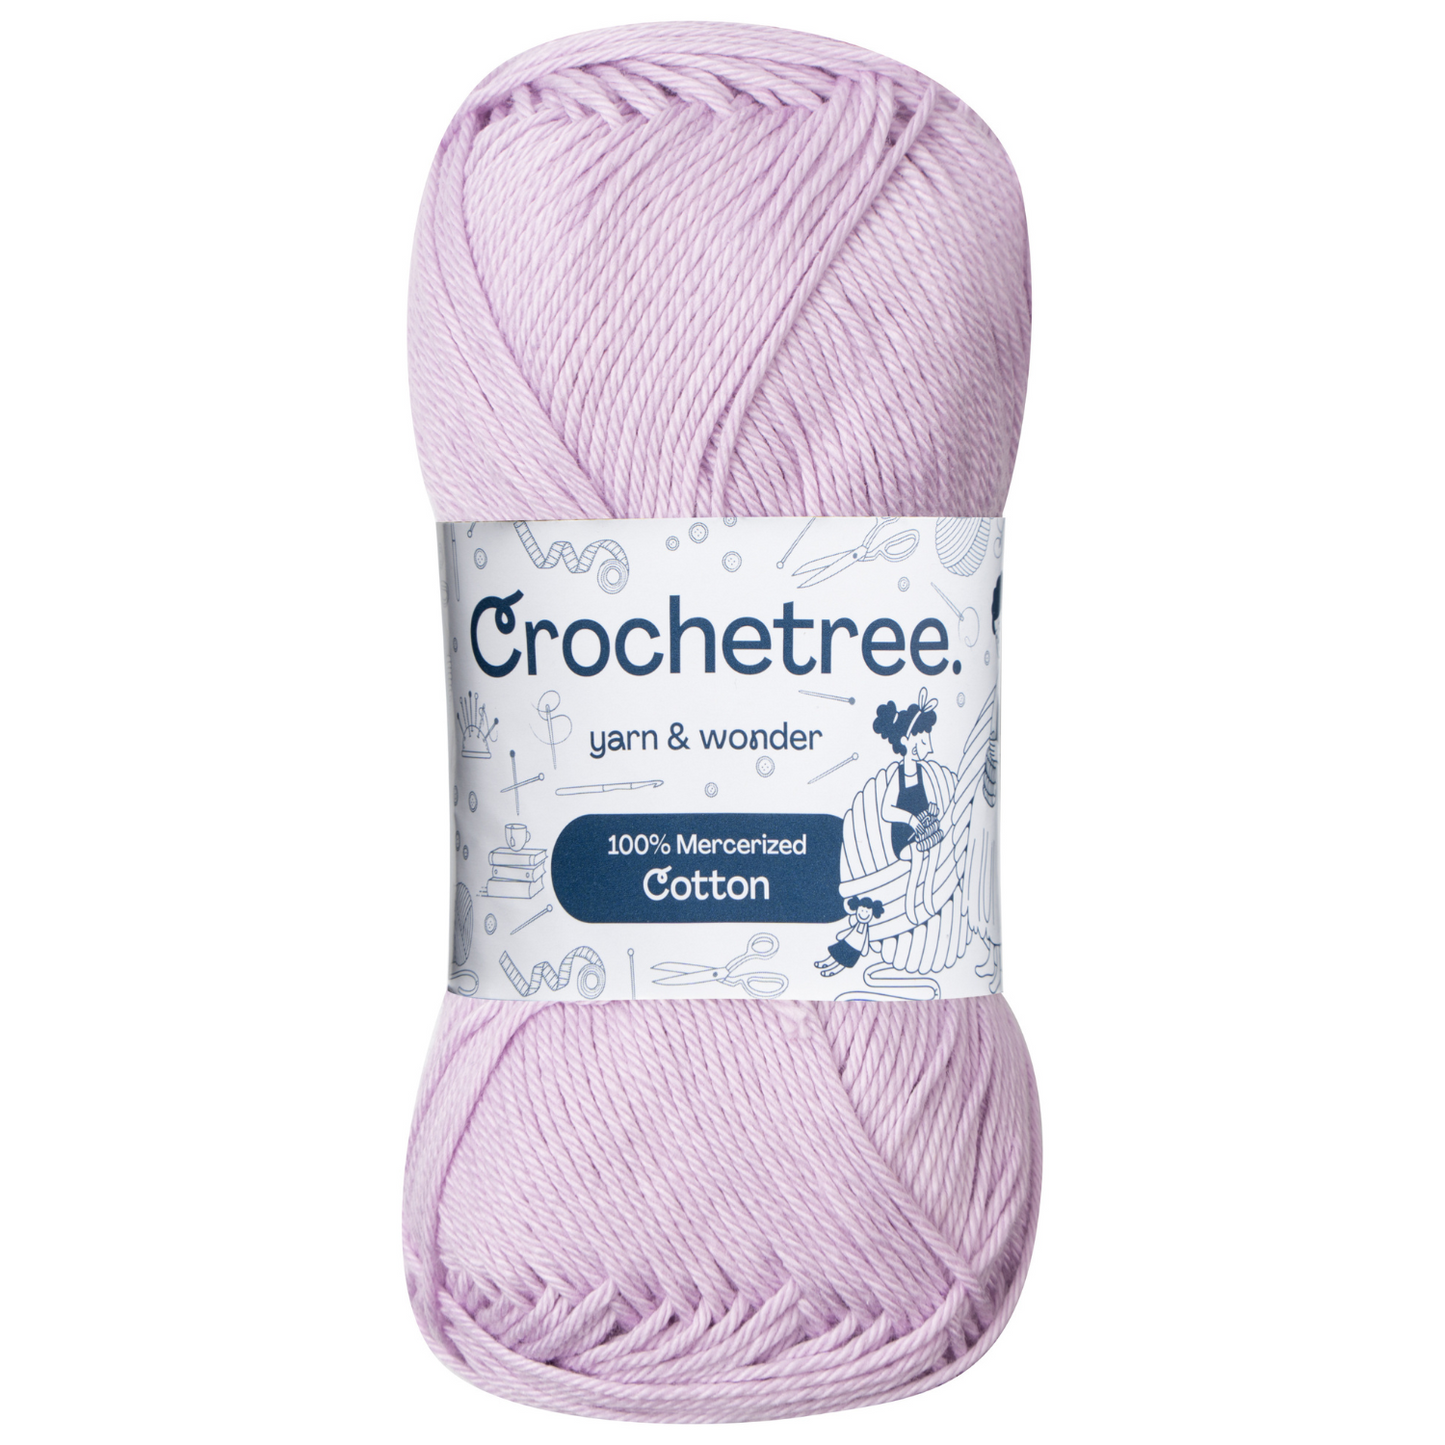 Crochetree 100% Mercerized Cotton Yarn 50g